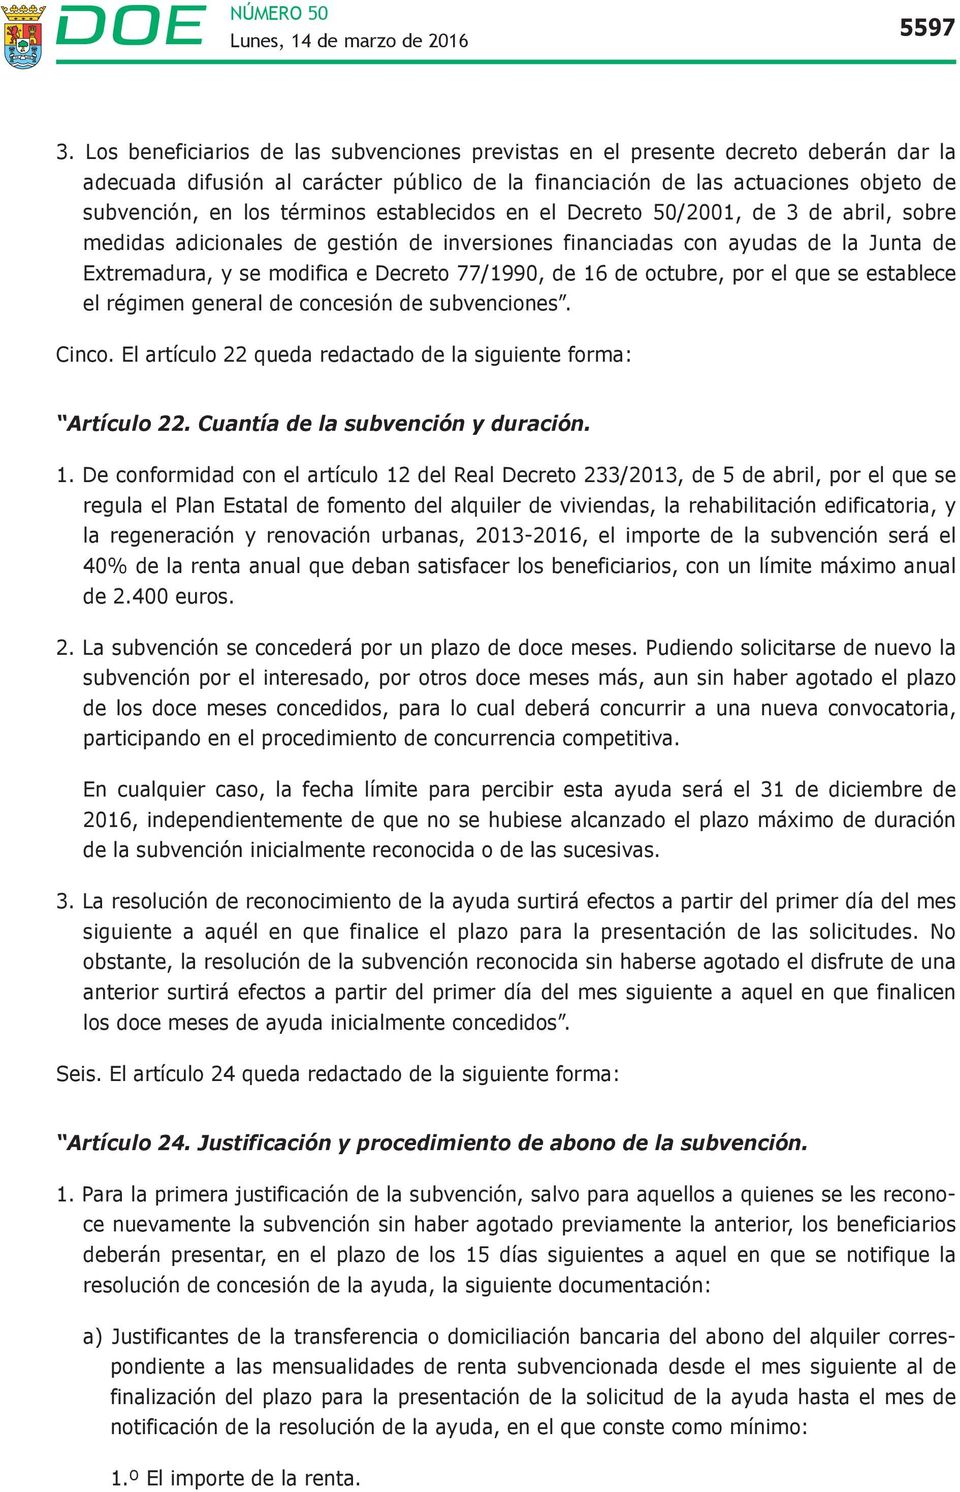 establecidos en el Decreto 50/2001, de 3 de abril, sobre medidas adicionales de gestión de inversiones financiadas con ayudas de la Junta de Extremadura, y se modifica e Decreto 77/1990, de 16 de